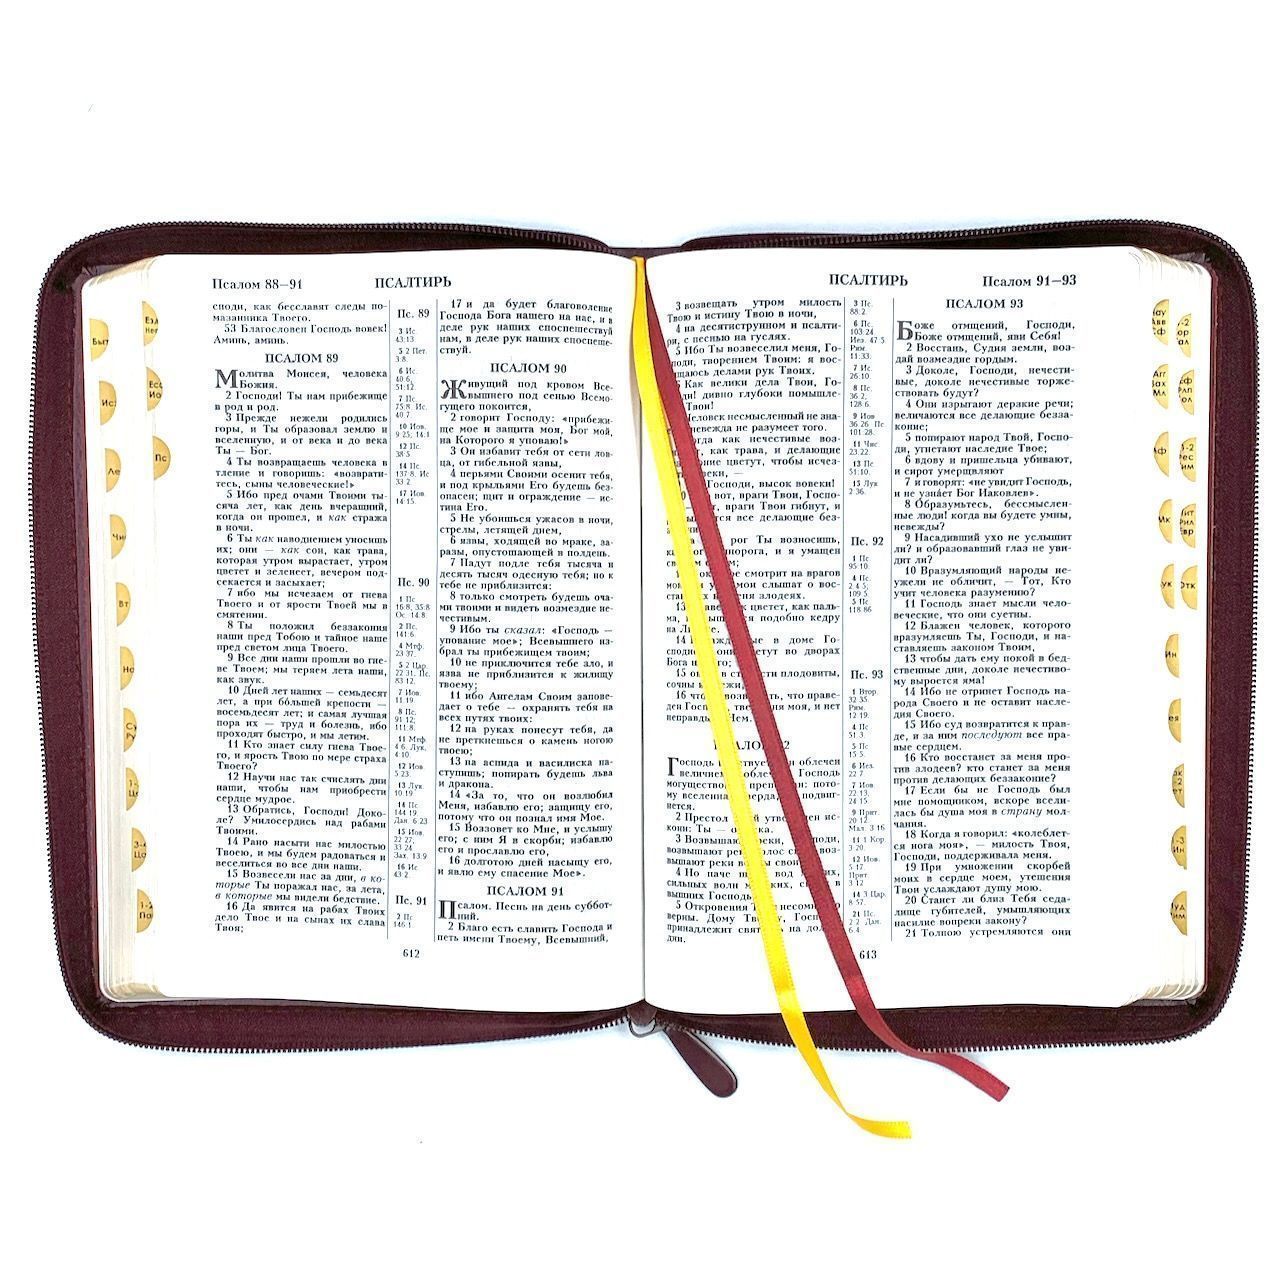 Библия 076zti код 23076-33,  дизайн "Библия с вензелем", переплет из искусственной кожи на молнии с индексами, цвет темно-бордовый, размер 180x243 мм